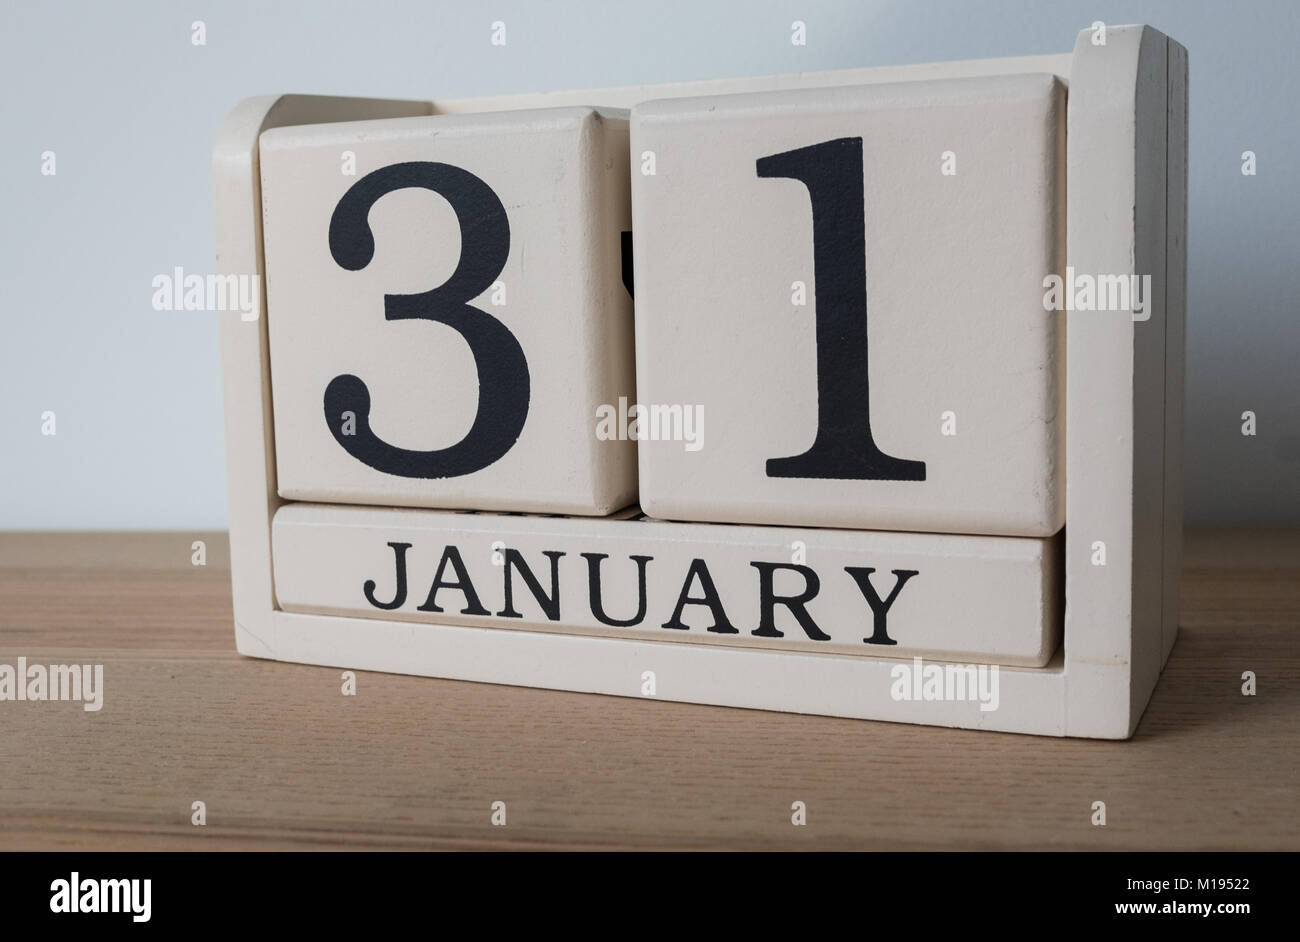 Il 31 gennaio, data sul calendario. Autovalutazione Imposta scadenza per lavoratori autonomi nel Regno Unito Foto Stock